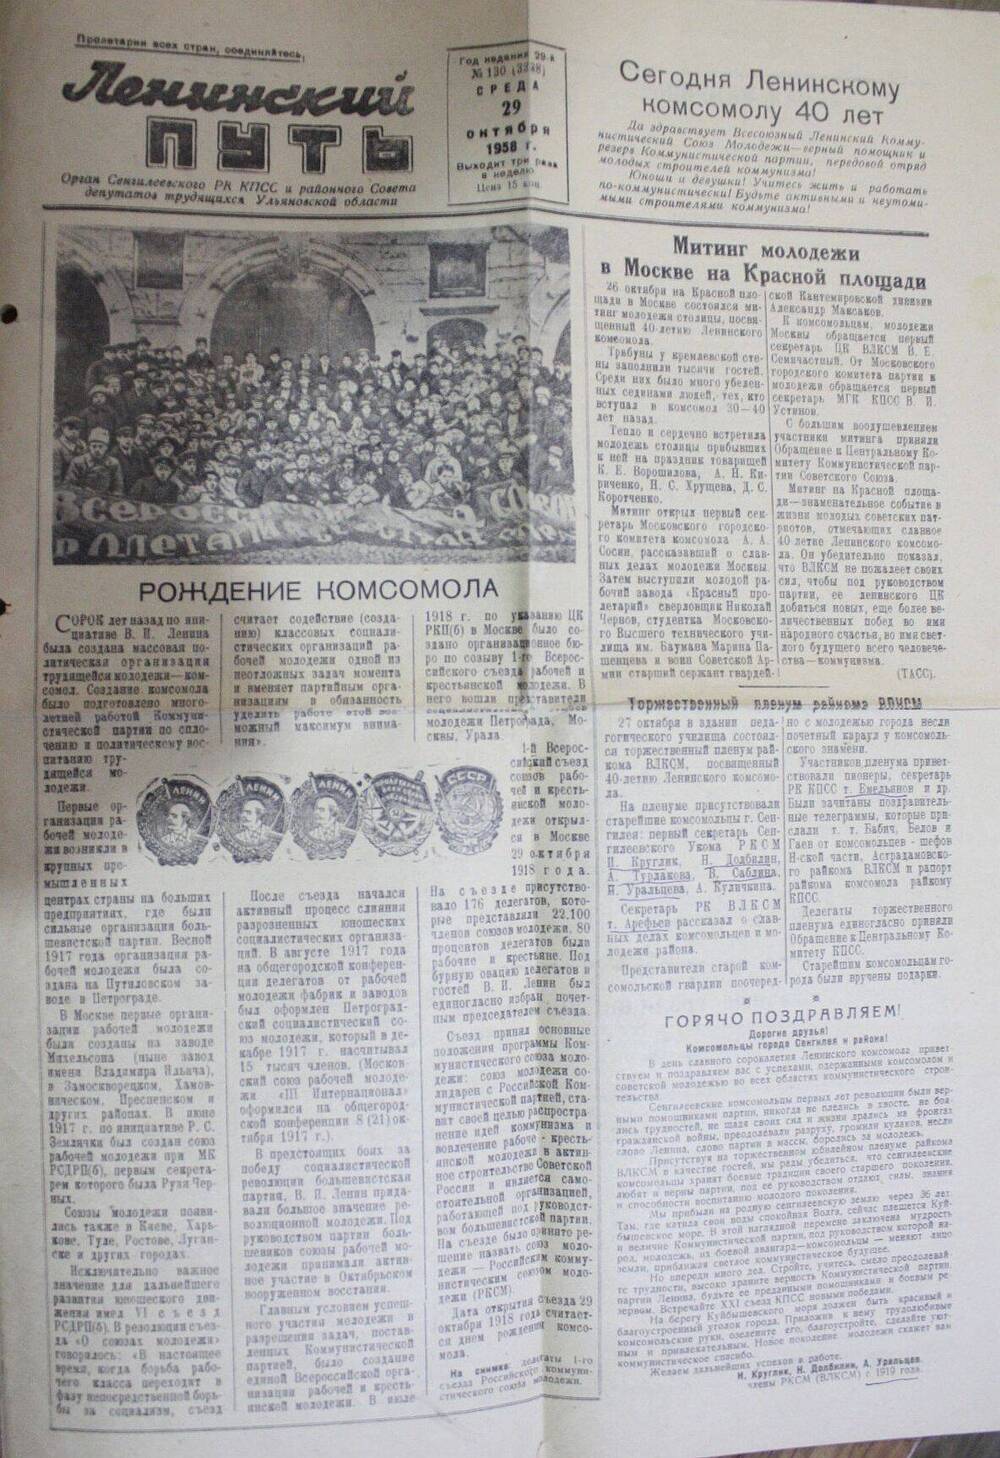 Газета Ленинский путь № 130 от 29.10.1958 с материалом о комсомоле.